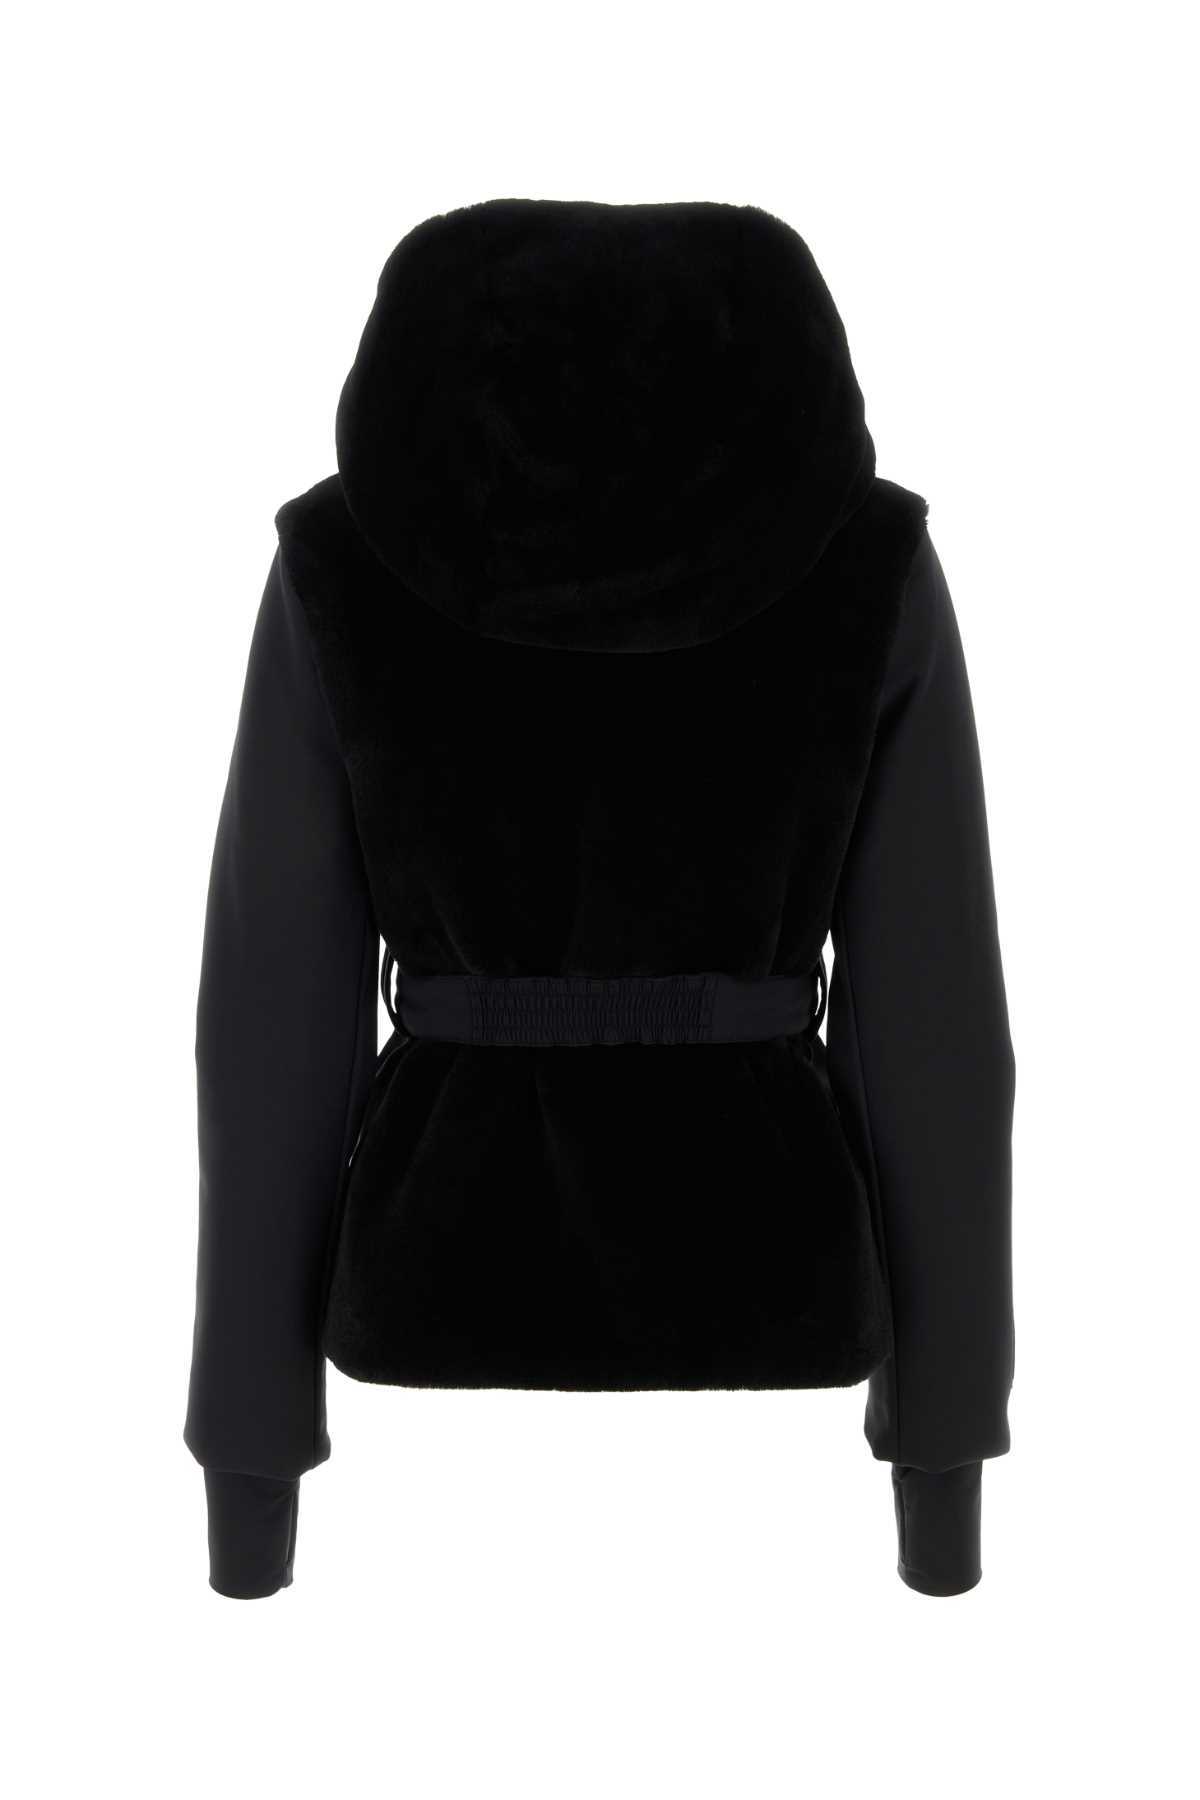 Shop Fendi Black Stretch Nylon Jacket